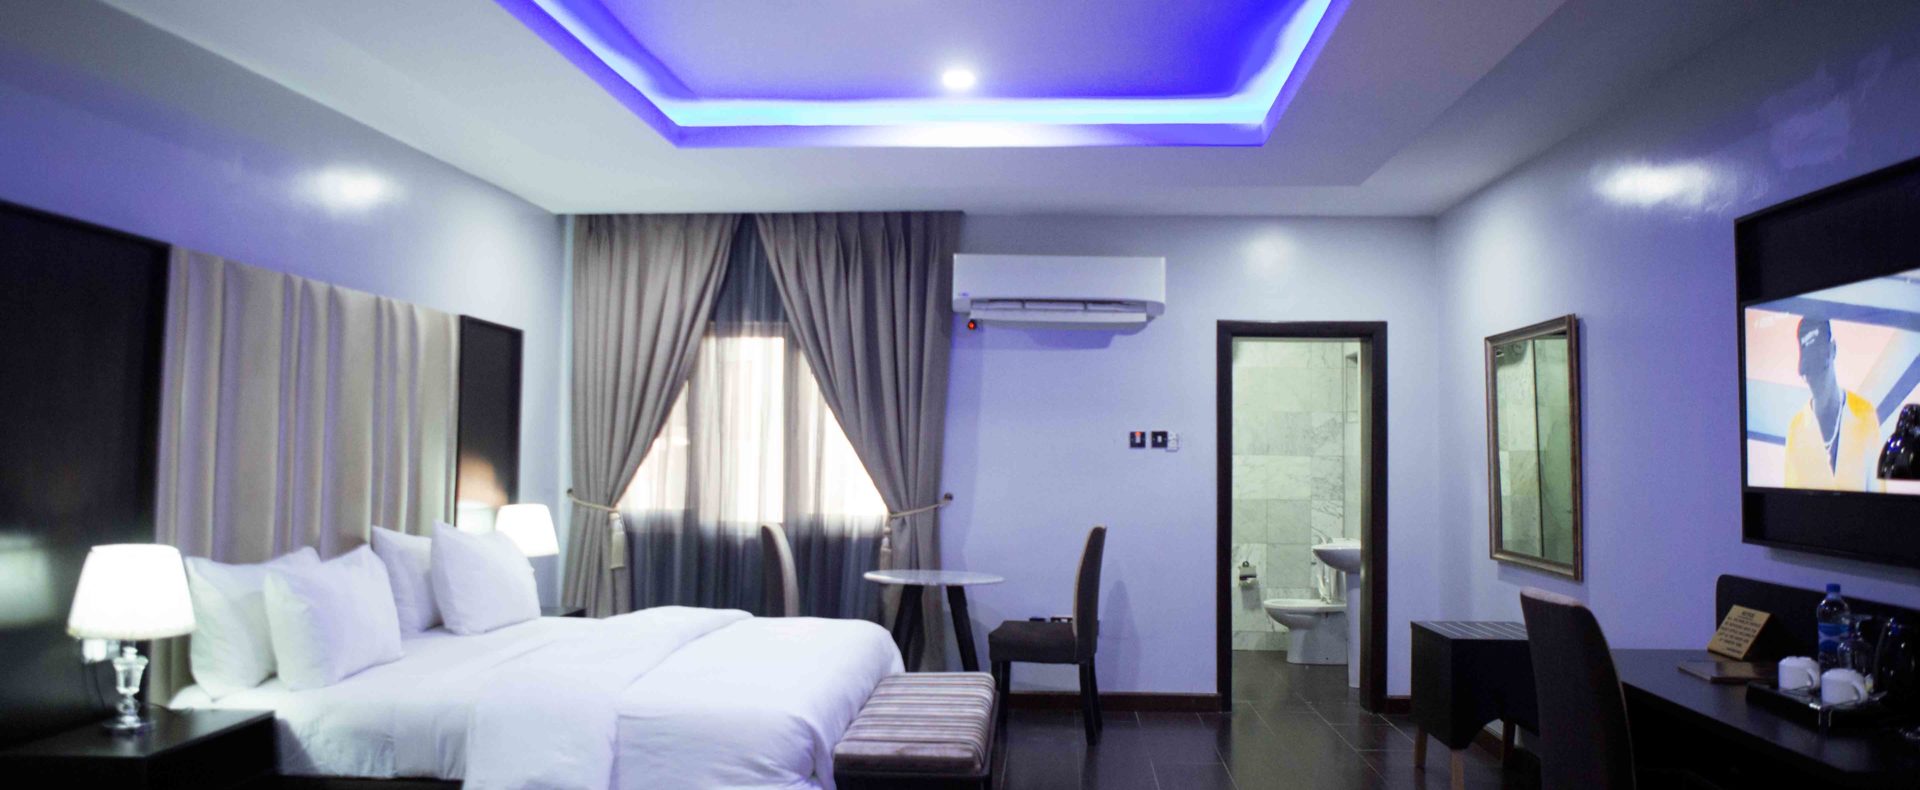 Hotel Studio Suite Room In Lekki Phase1 Nigeria